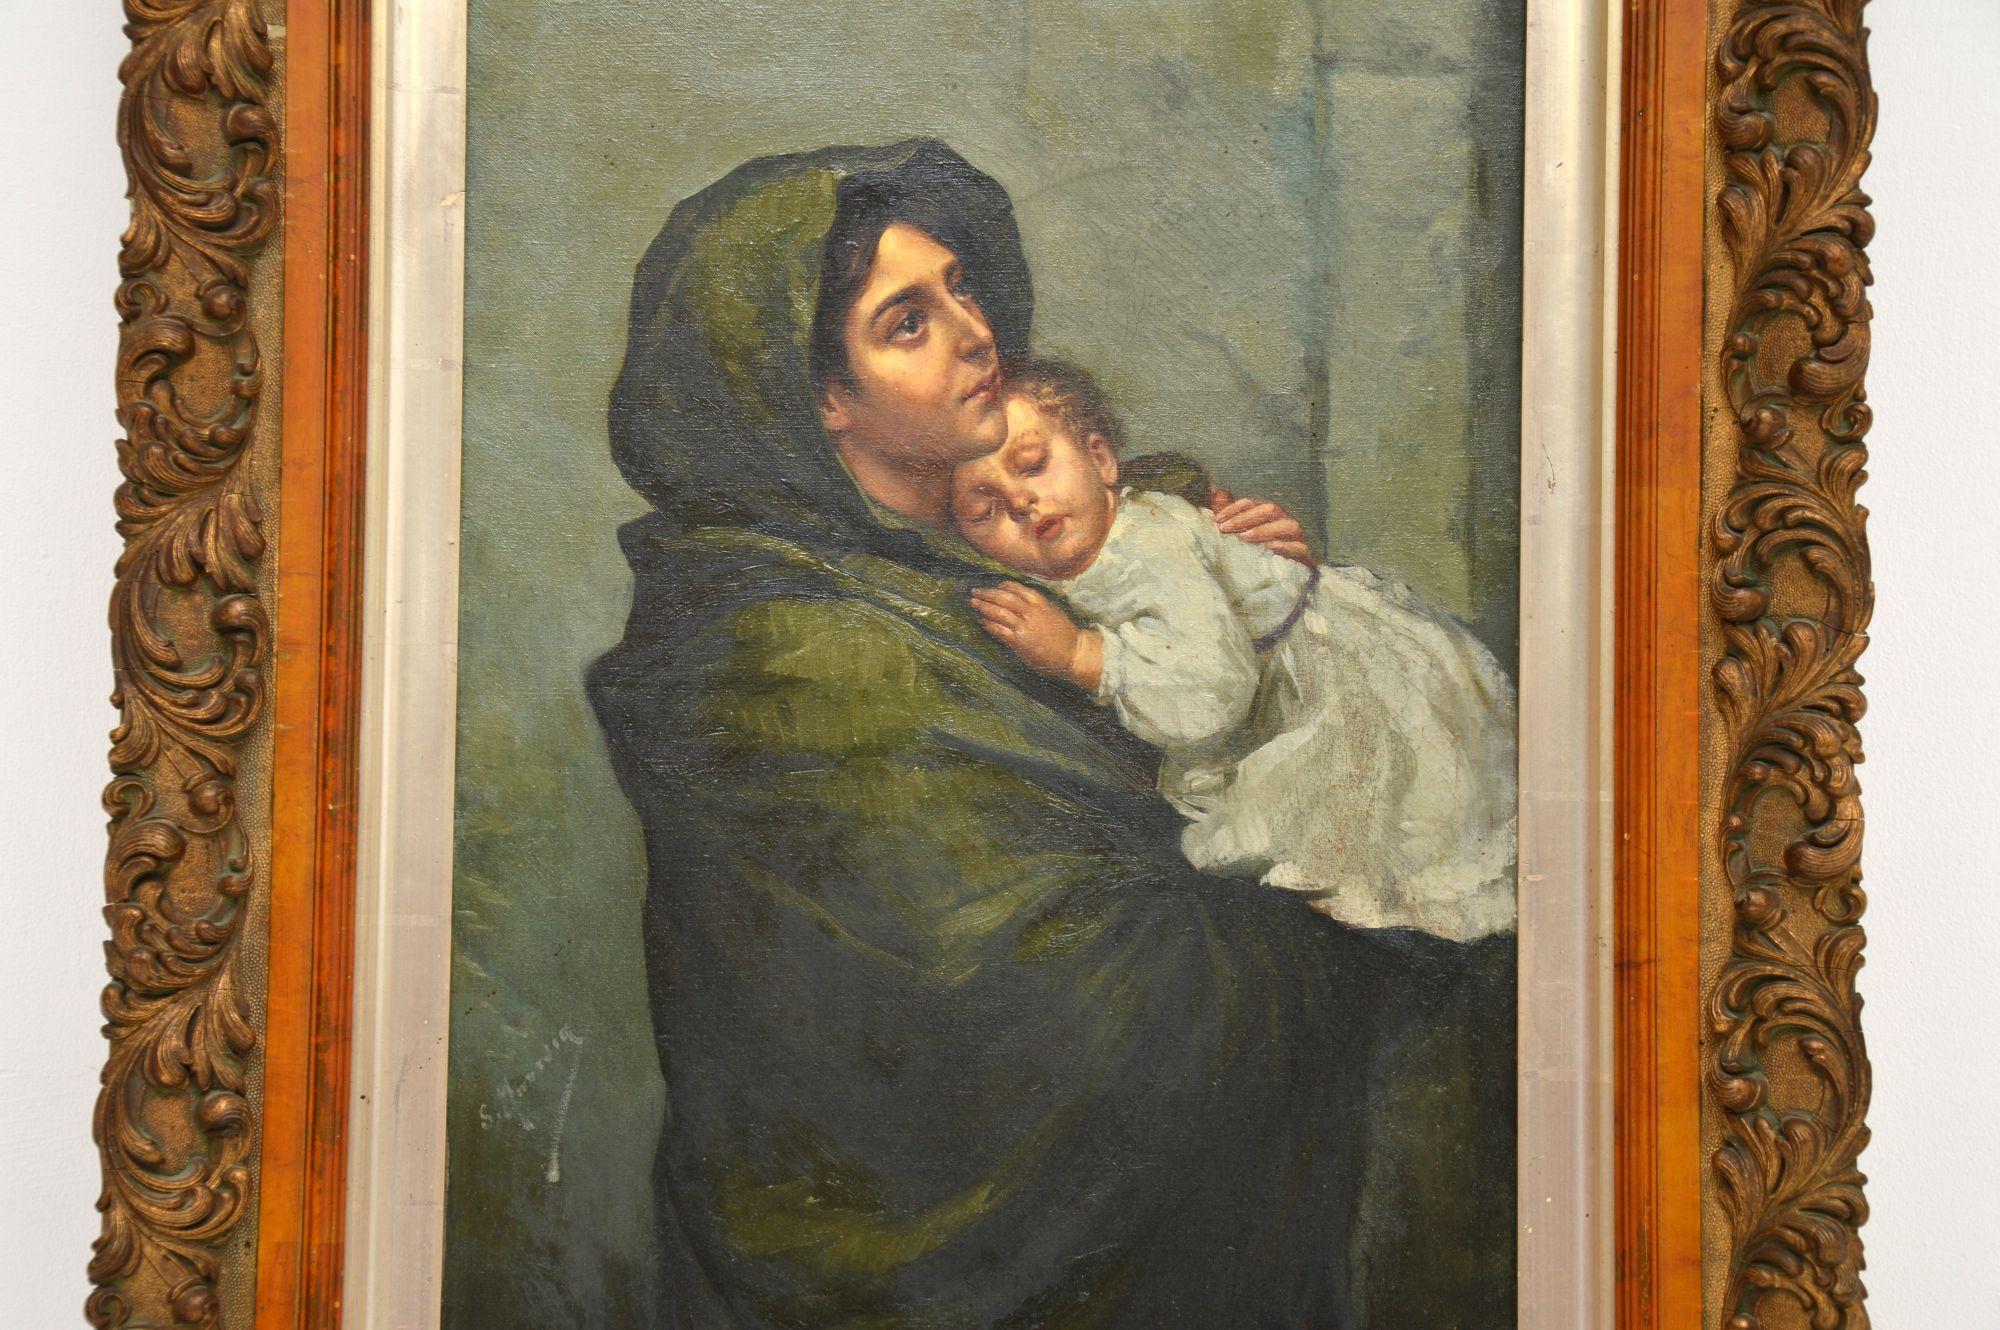 Une magnifique peinture à l'huile hollandaise ancienne dans un cadre en bois doré, représentant une mère et son bébé, datant d'environ la période 1860-1880.

Il s'agit d'un sujet magnifique et touchant, exécuté avec beaucoup d'habileté et signé par